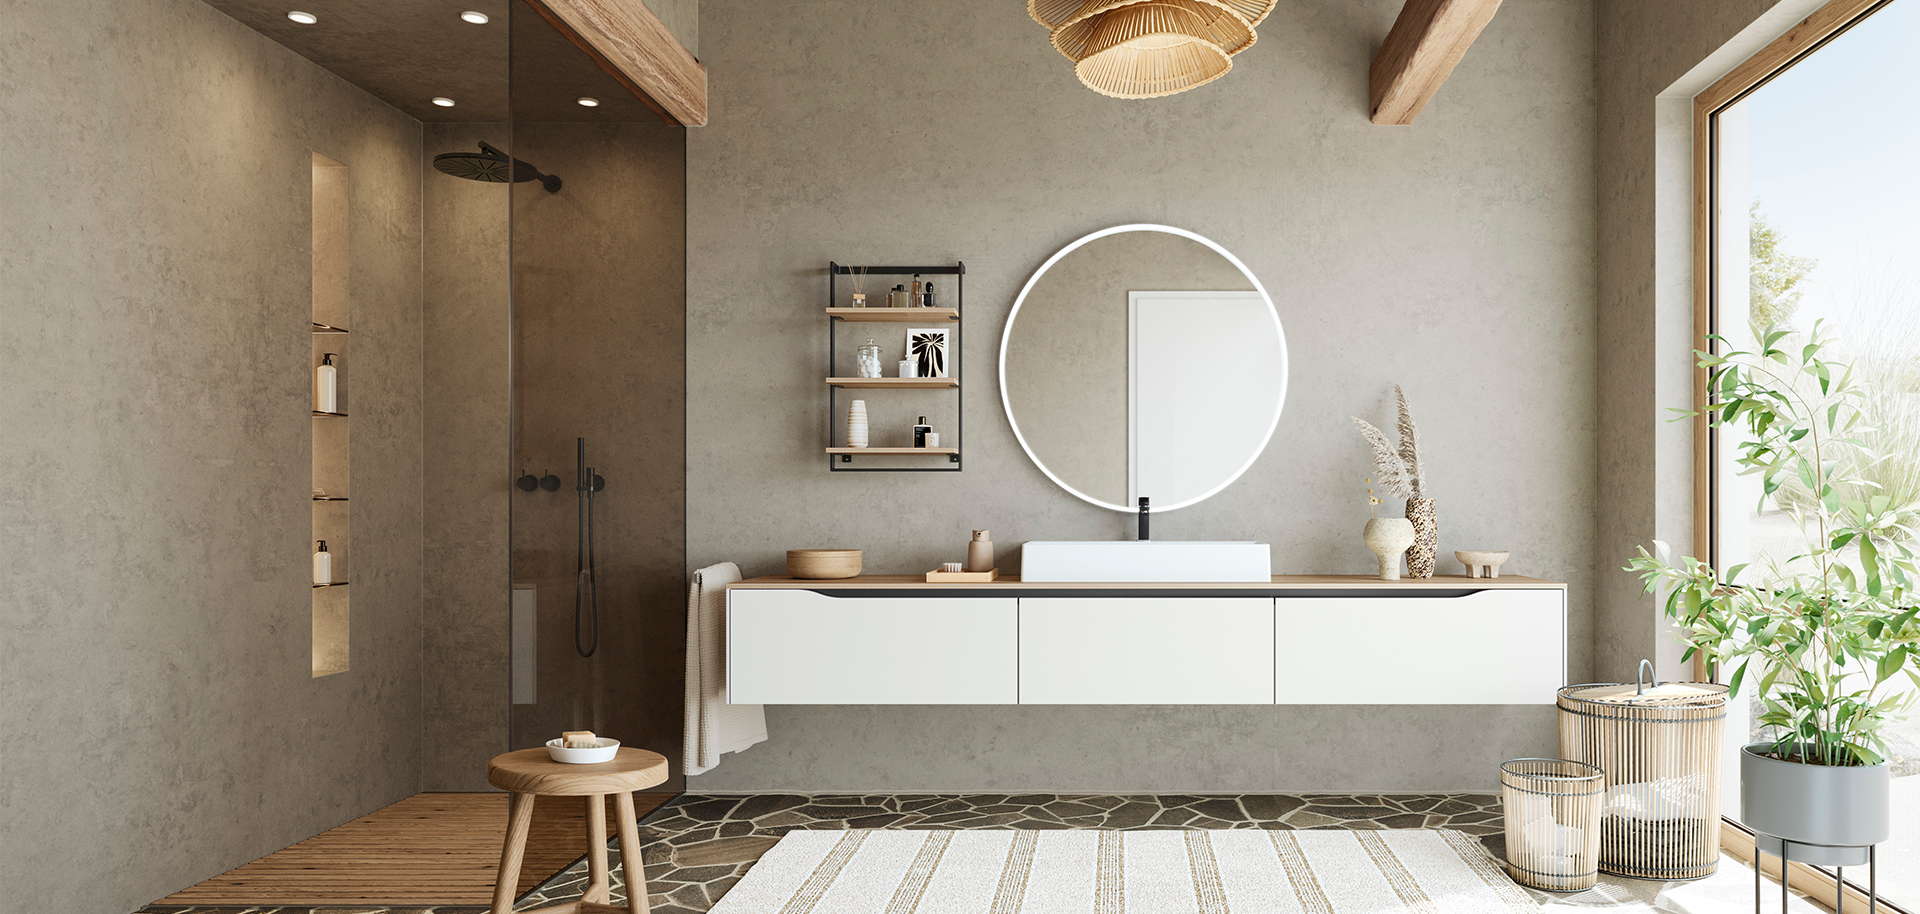 Minimalistisch badkamerontwerp met zwevende wastafel, ronde spiegel en natuurlijke accenten voor een rustige en stijlvolle ruimte.